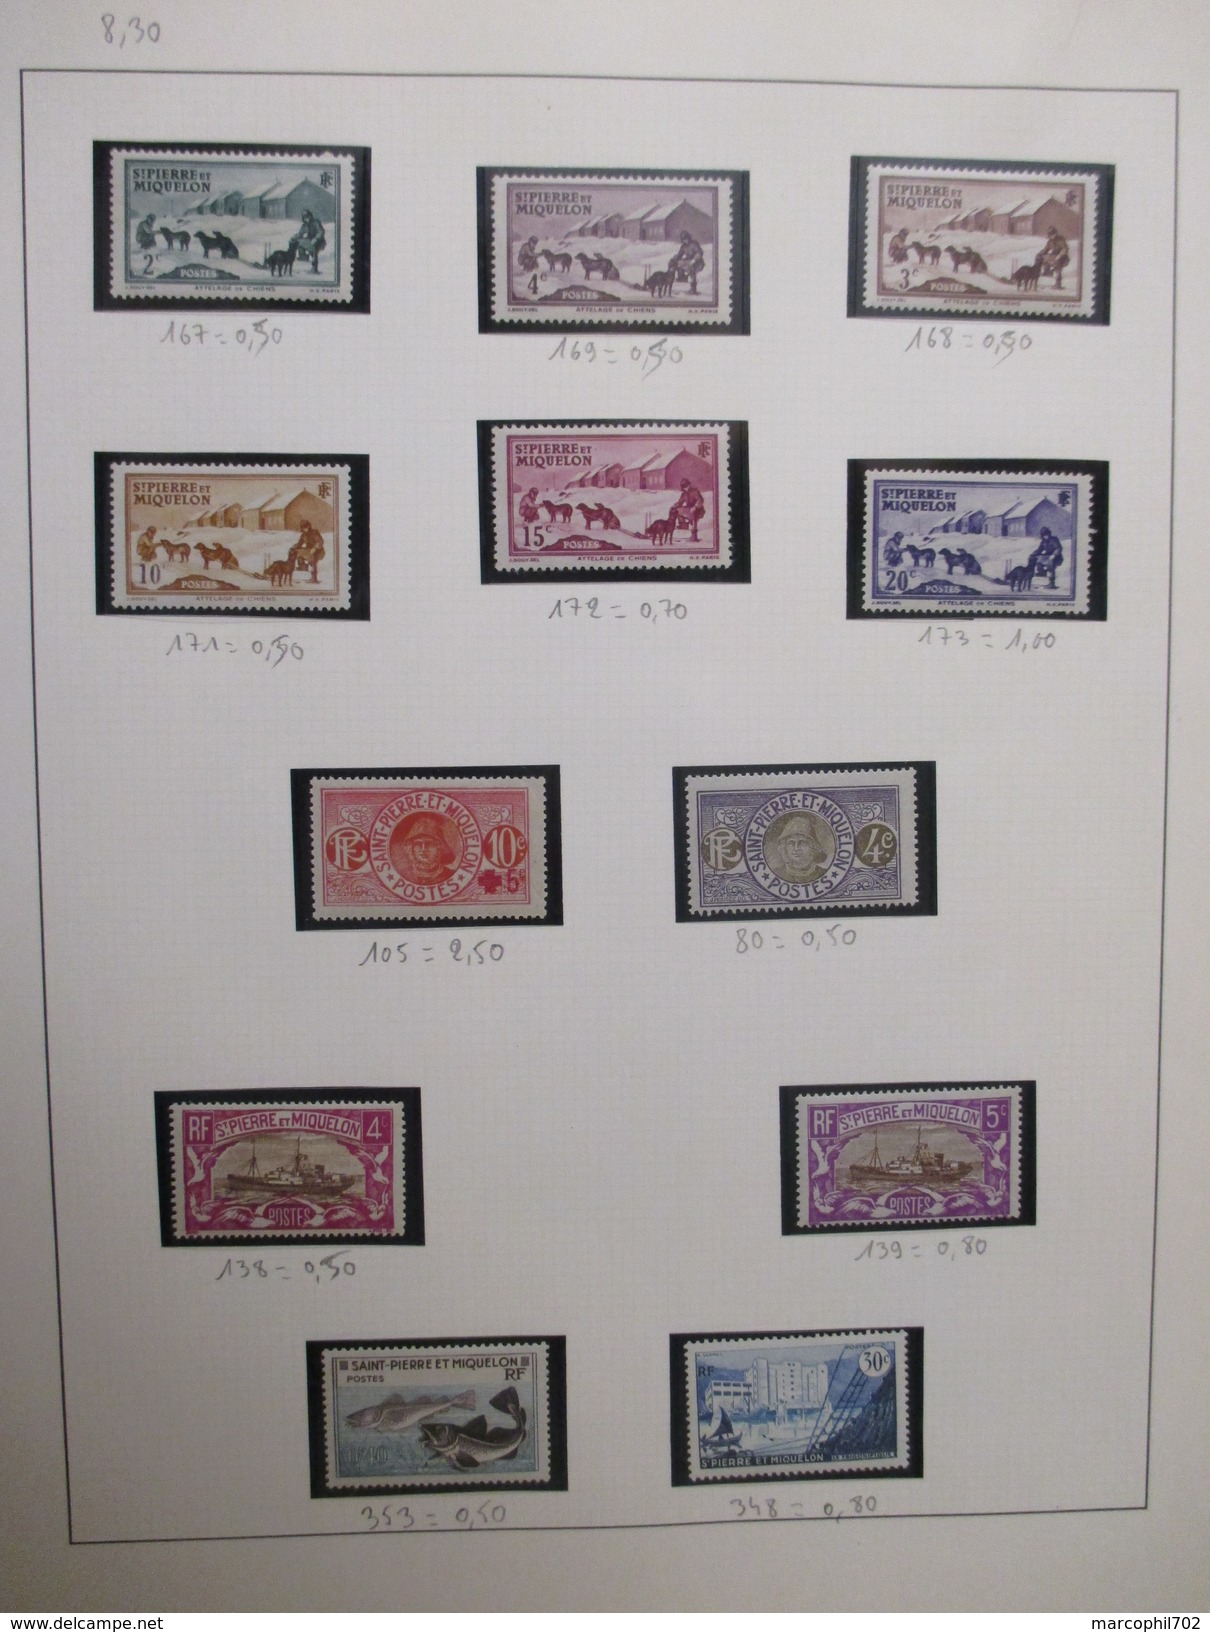 petit lot de timbres anciennes colonnies francaise  ces timbres sont neuf ou charnieres ou oblitérés